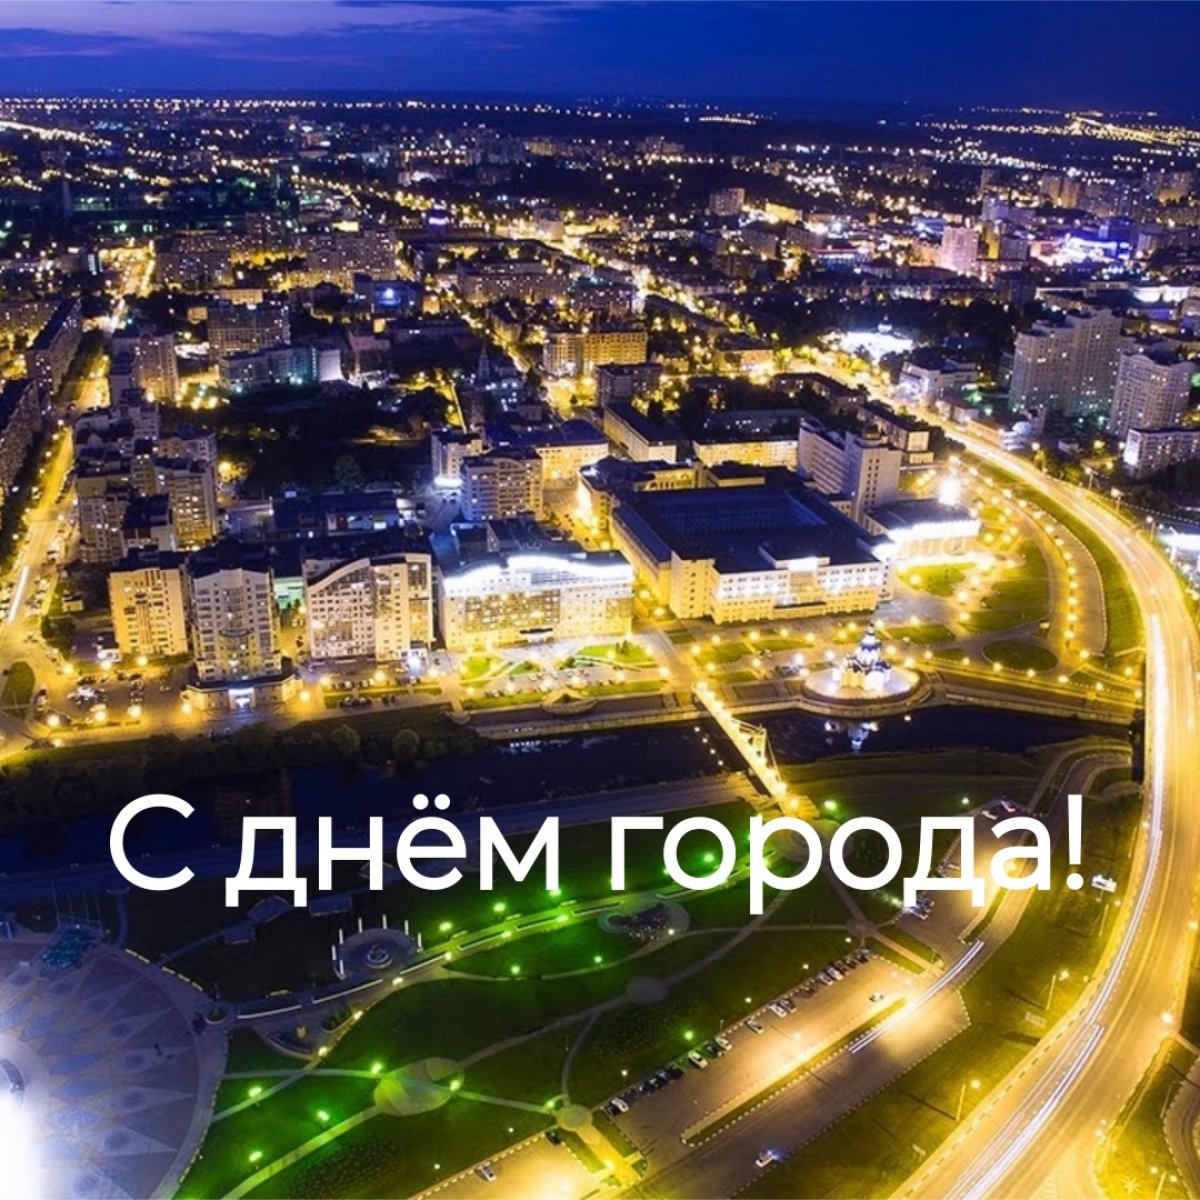 Поздравляем белгородцев и гостей города с праздником! ❤